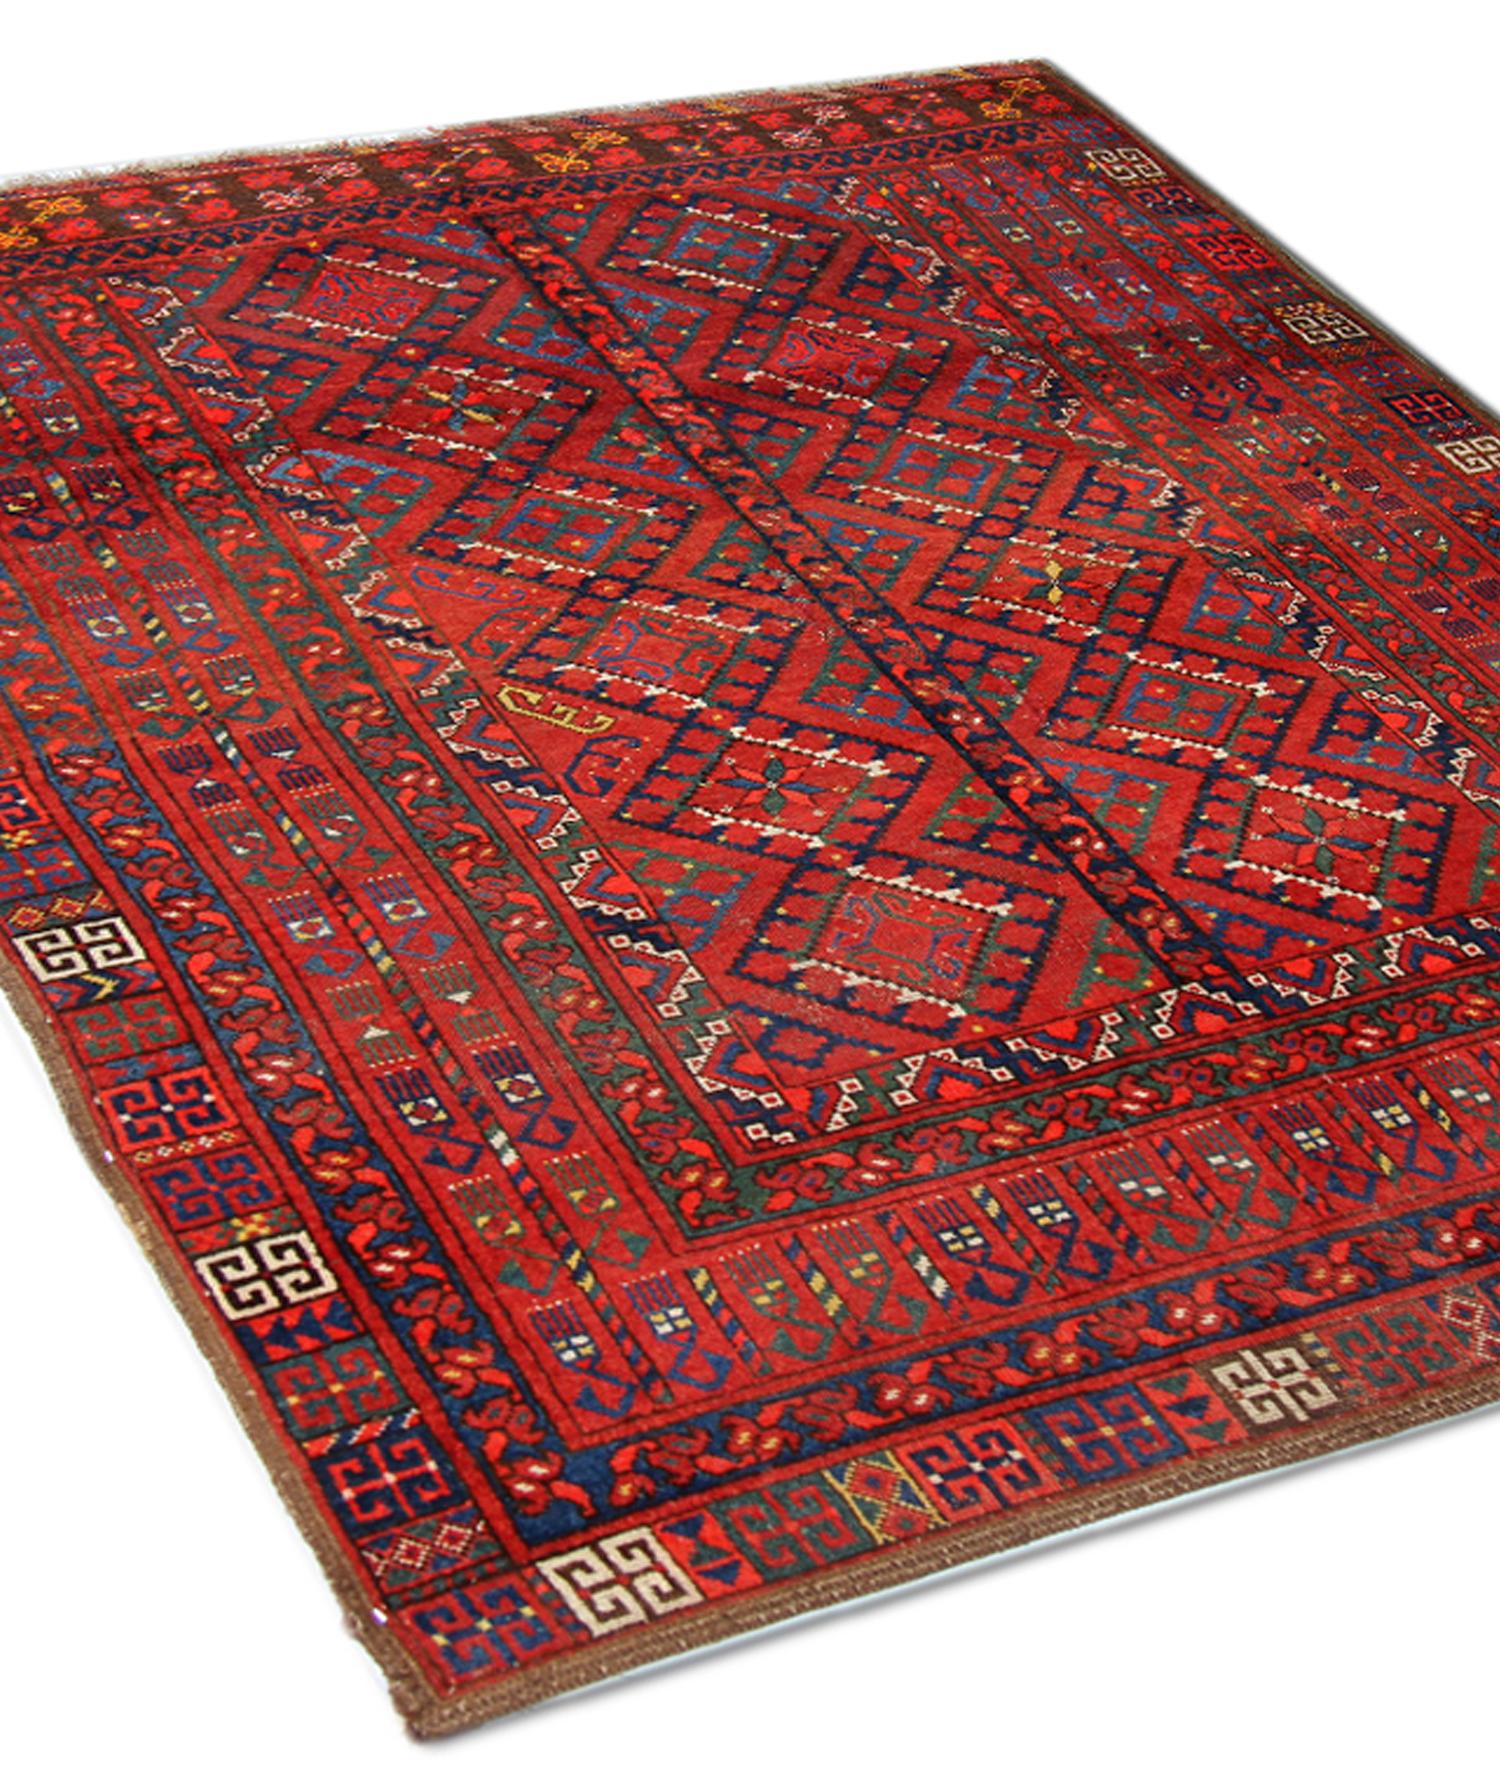 Ce tapis en laine est un exemple impressionnant de tapis noués à la main au début du XXe siècle. Il présente un fond rouge vif qui contraste magnifiquement avec les détails géométriques tissés en vert et en bleu. Le dessin présente un motif central